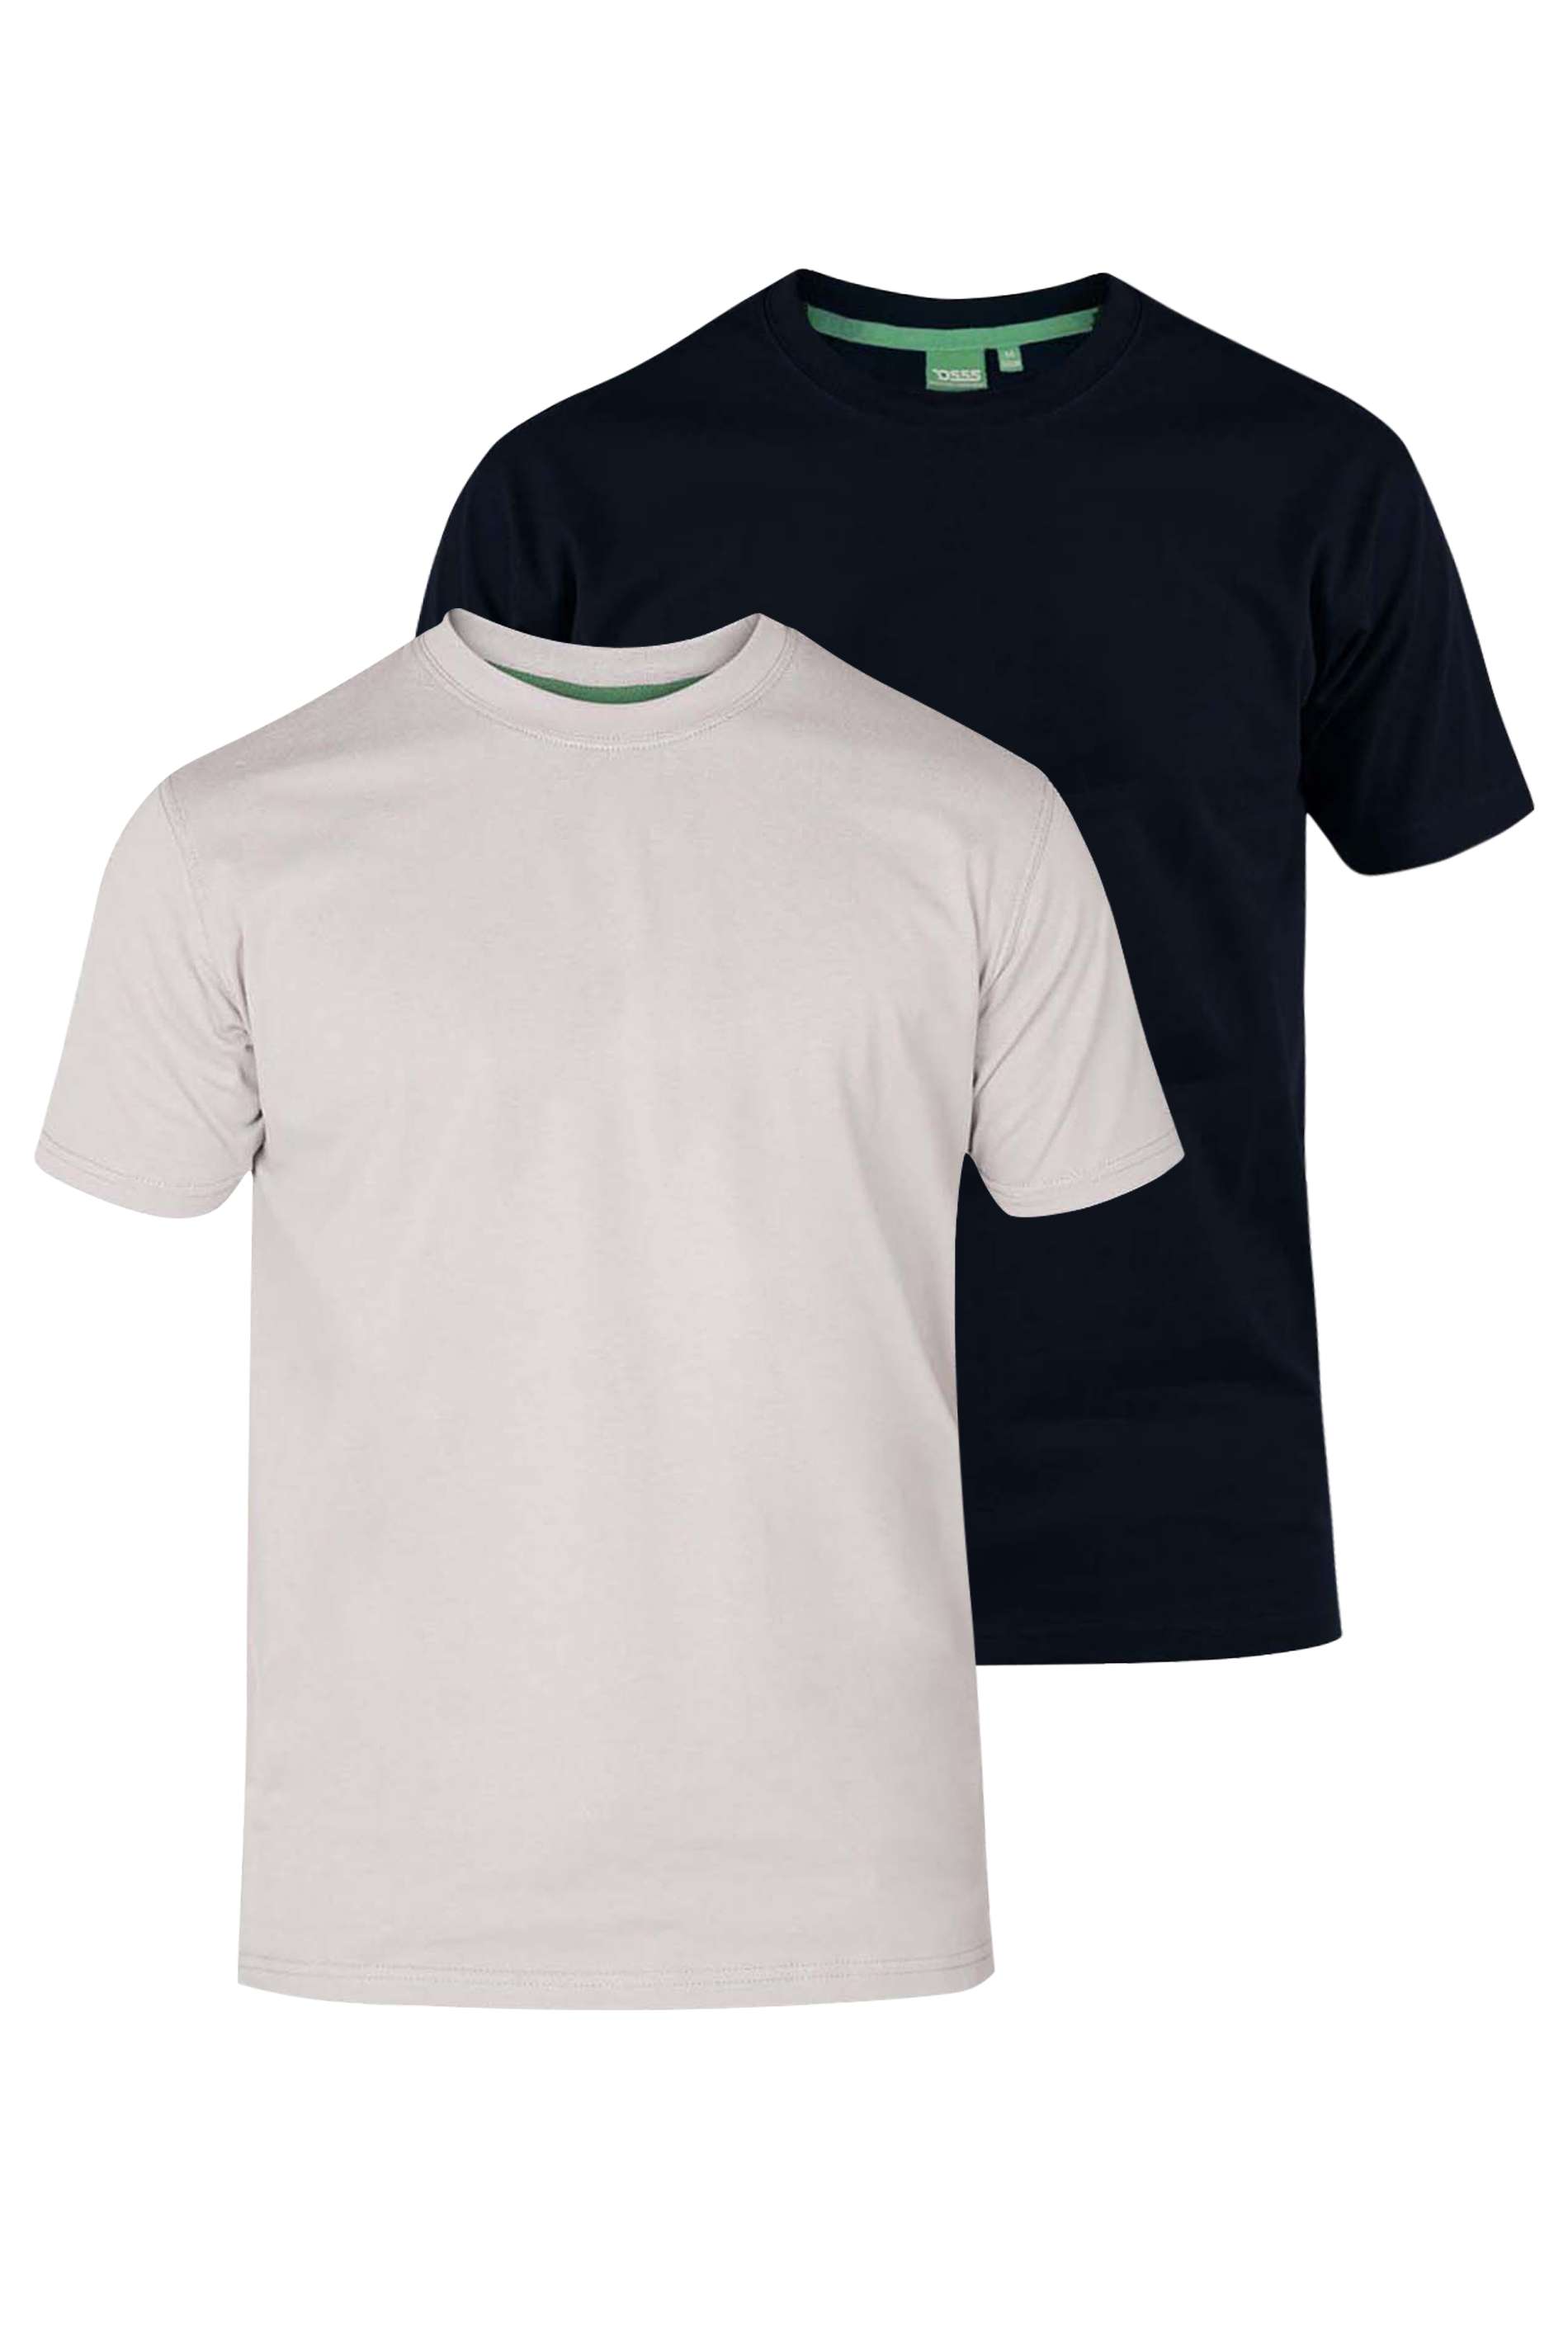 D555 Big & Tall 2 PACK Black & White T-Shirts_XS.jpg